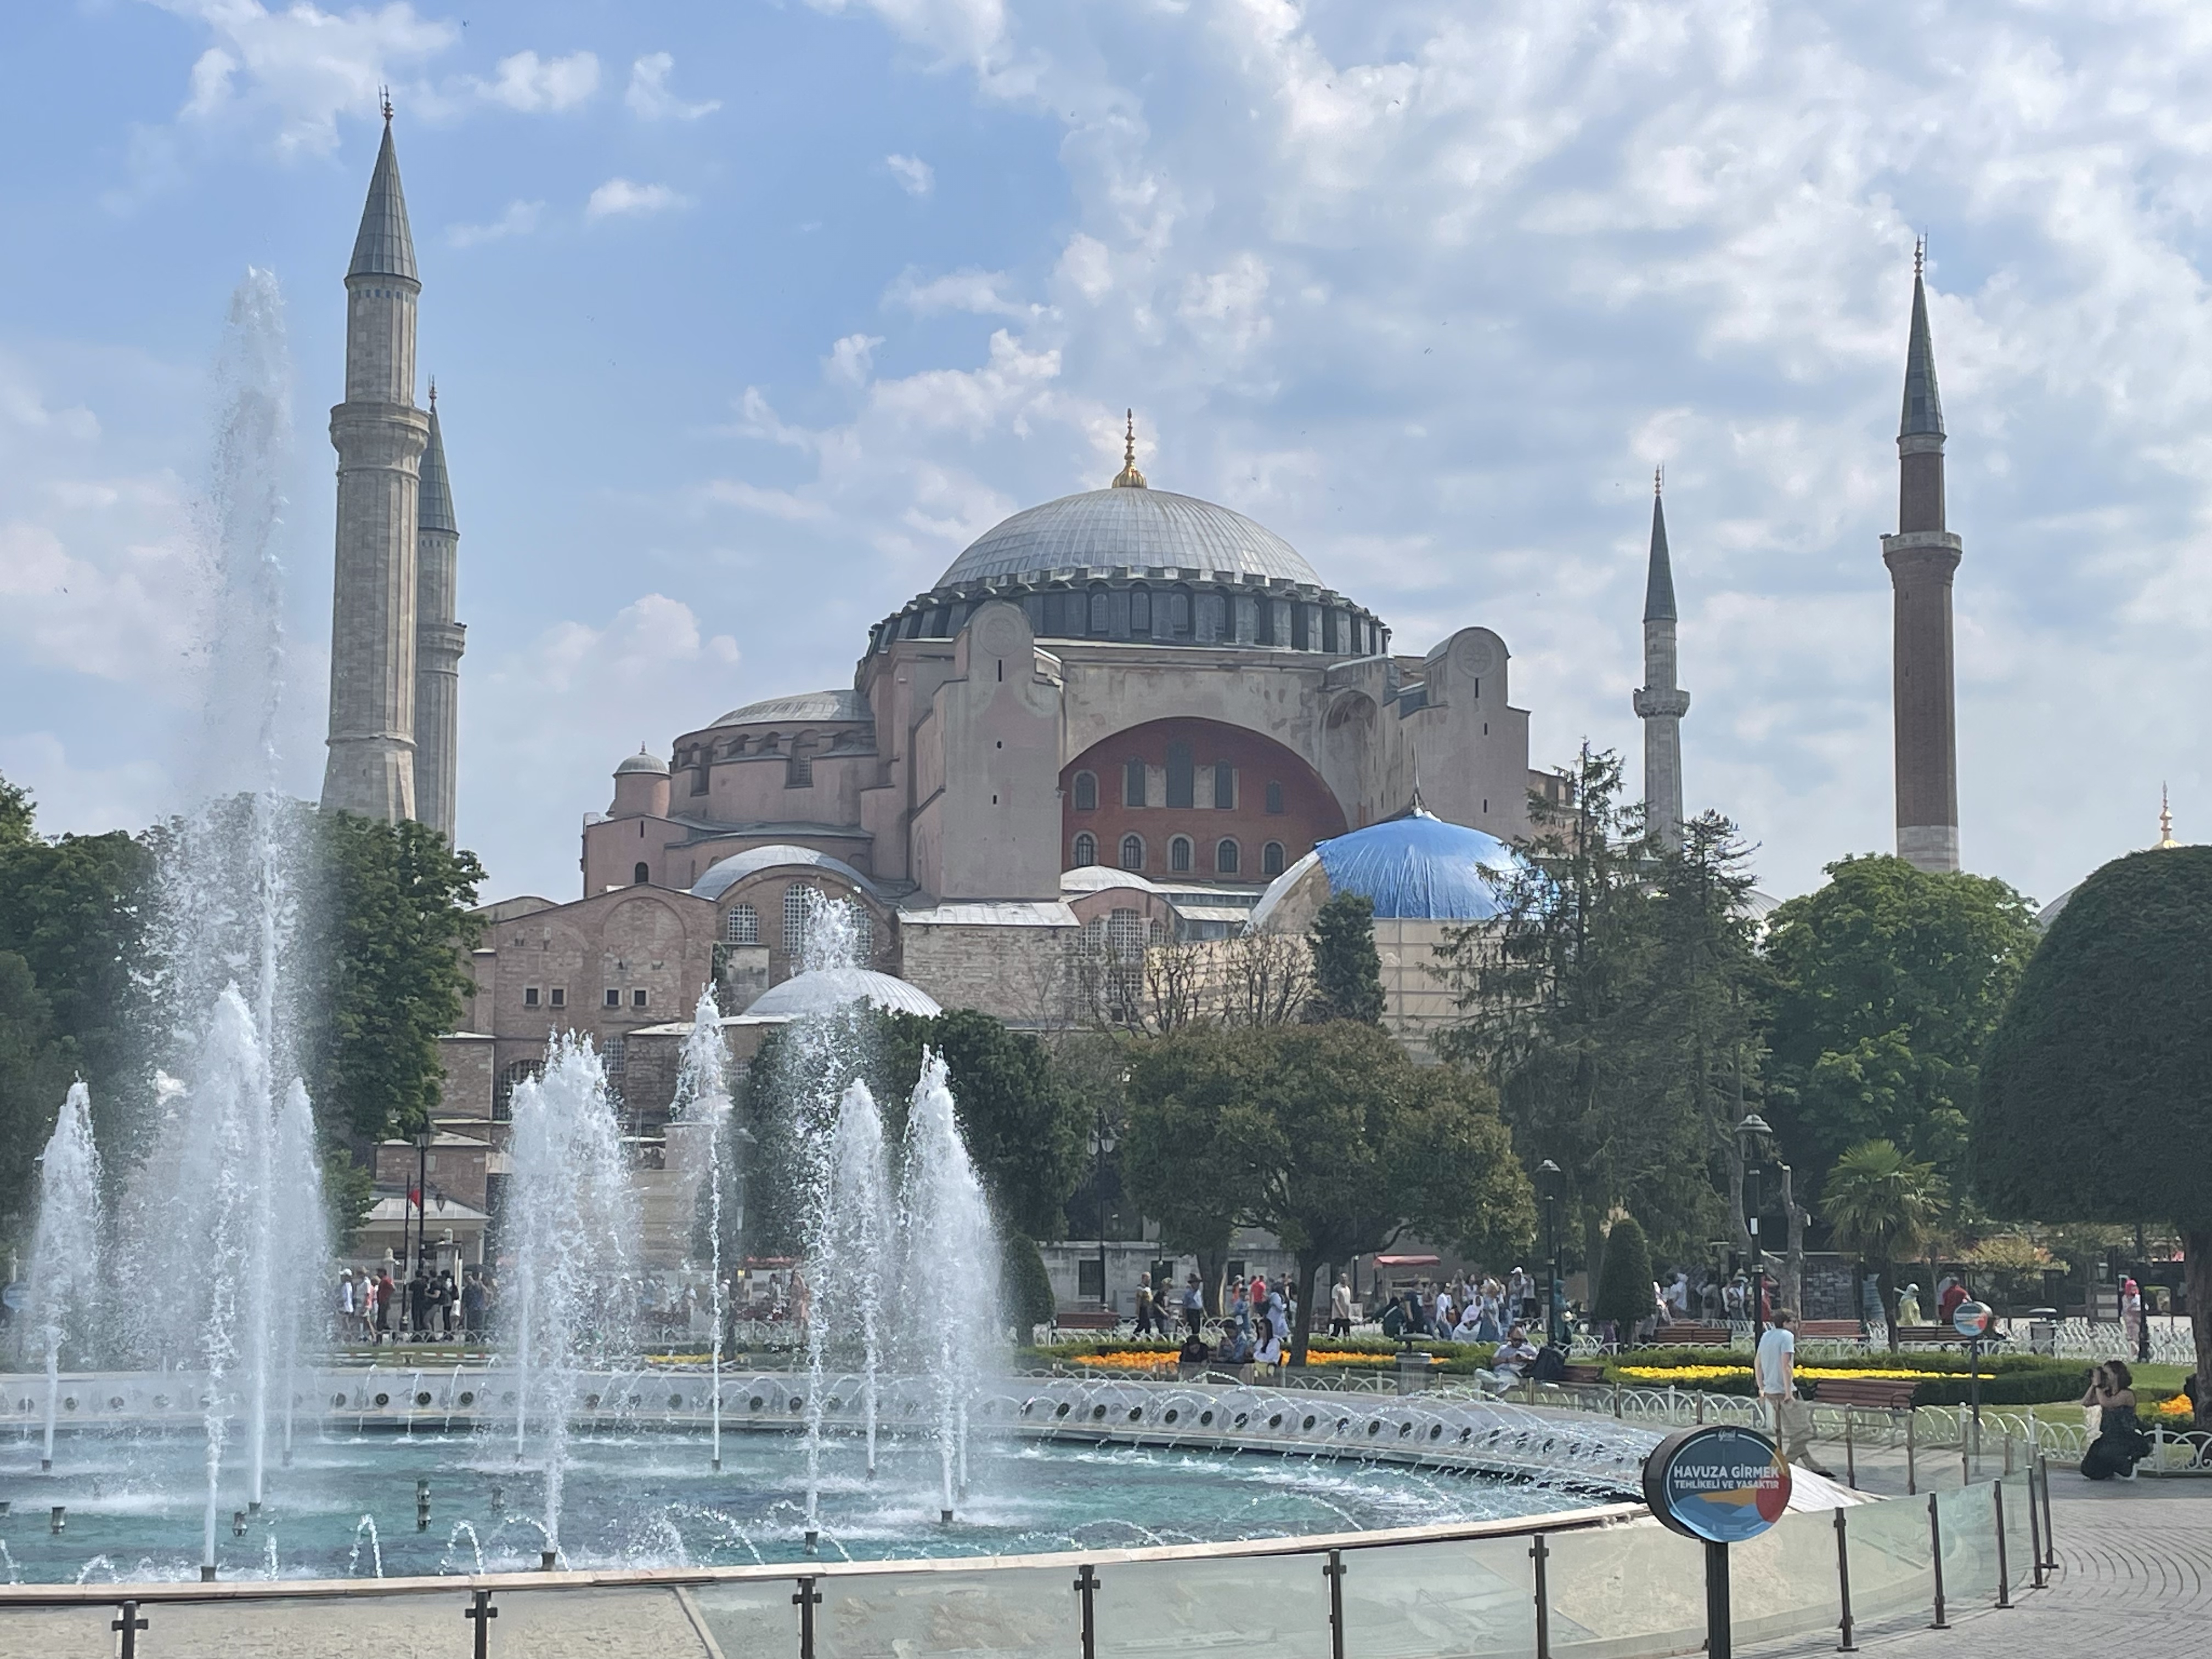 Visiting Hagia Sophia